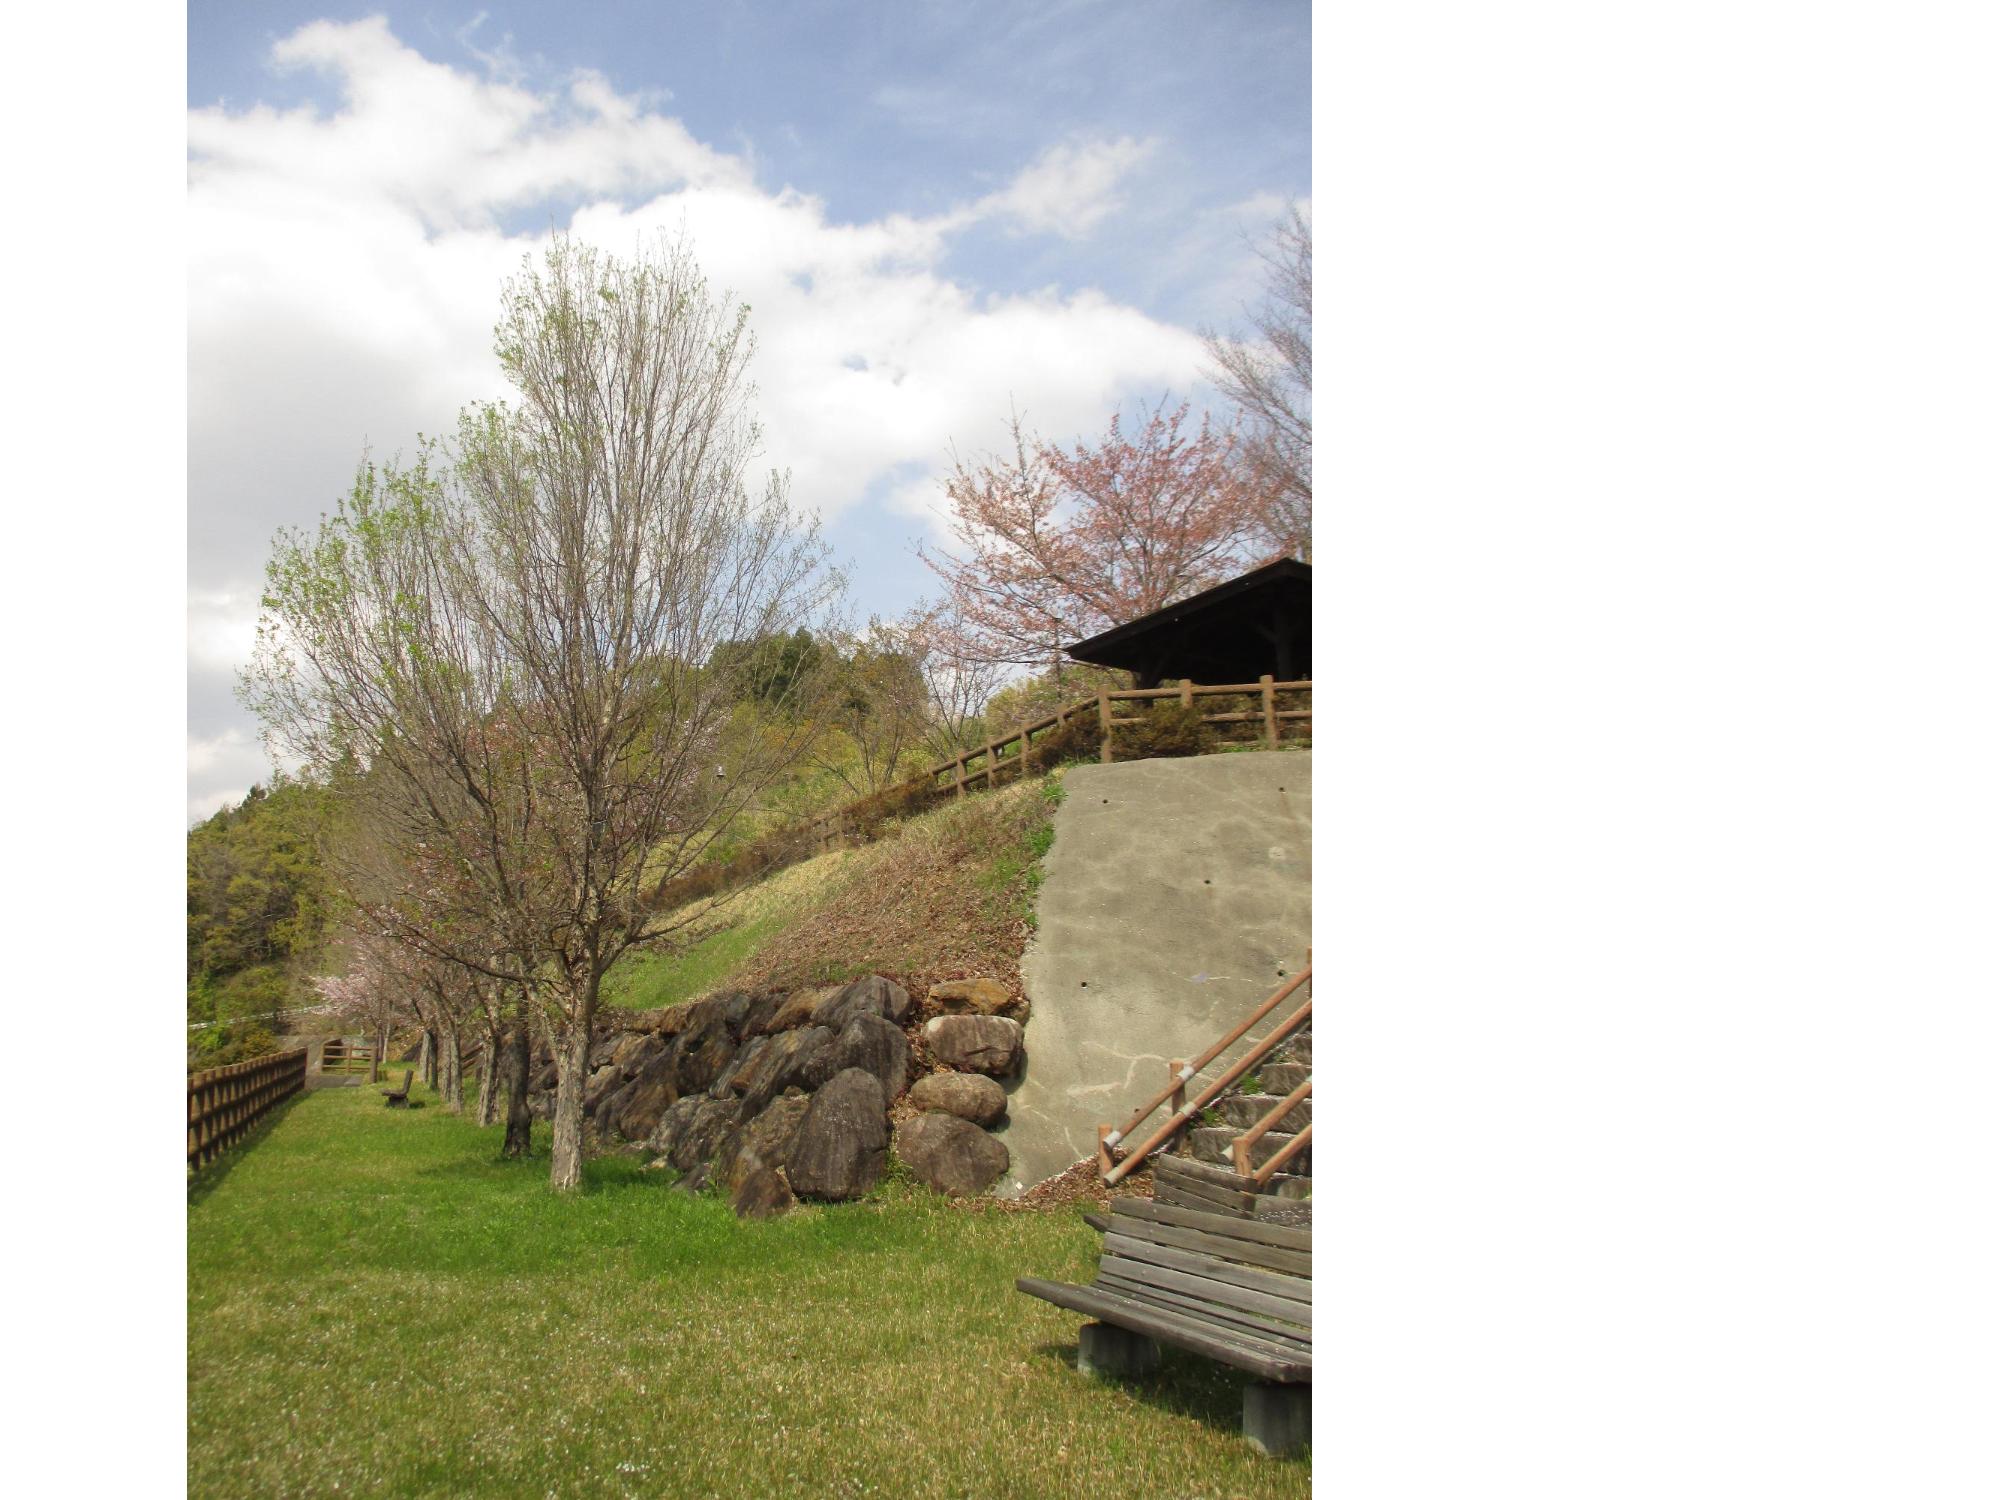 神明の丘眺望公園隣接の桜の開花状況